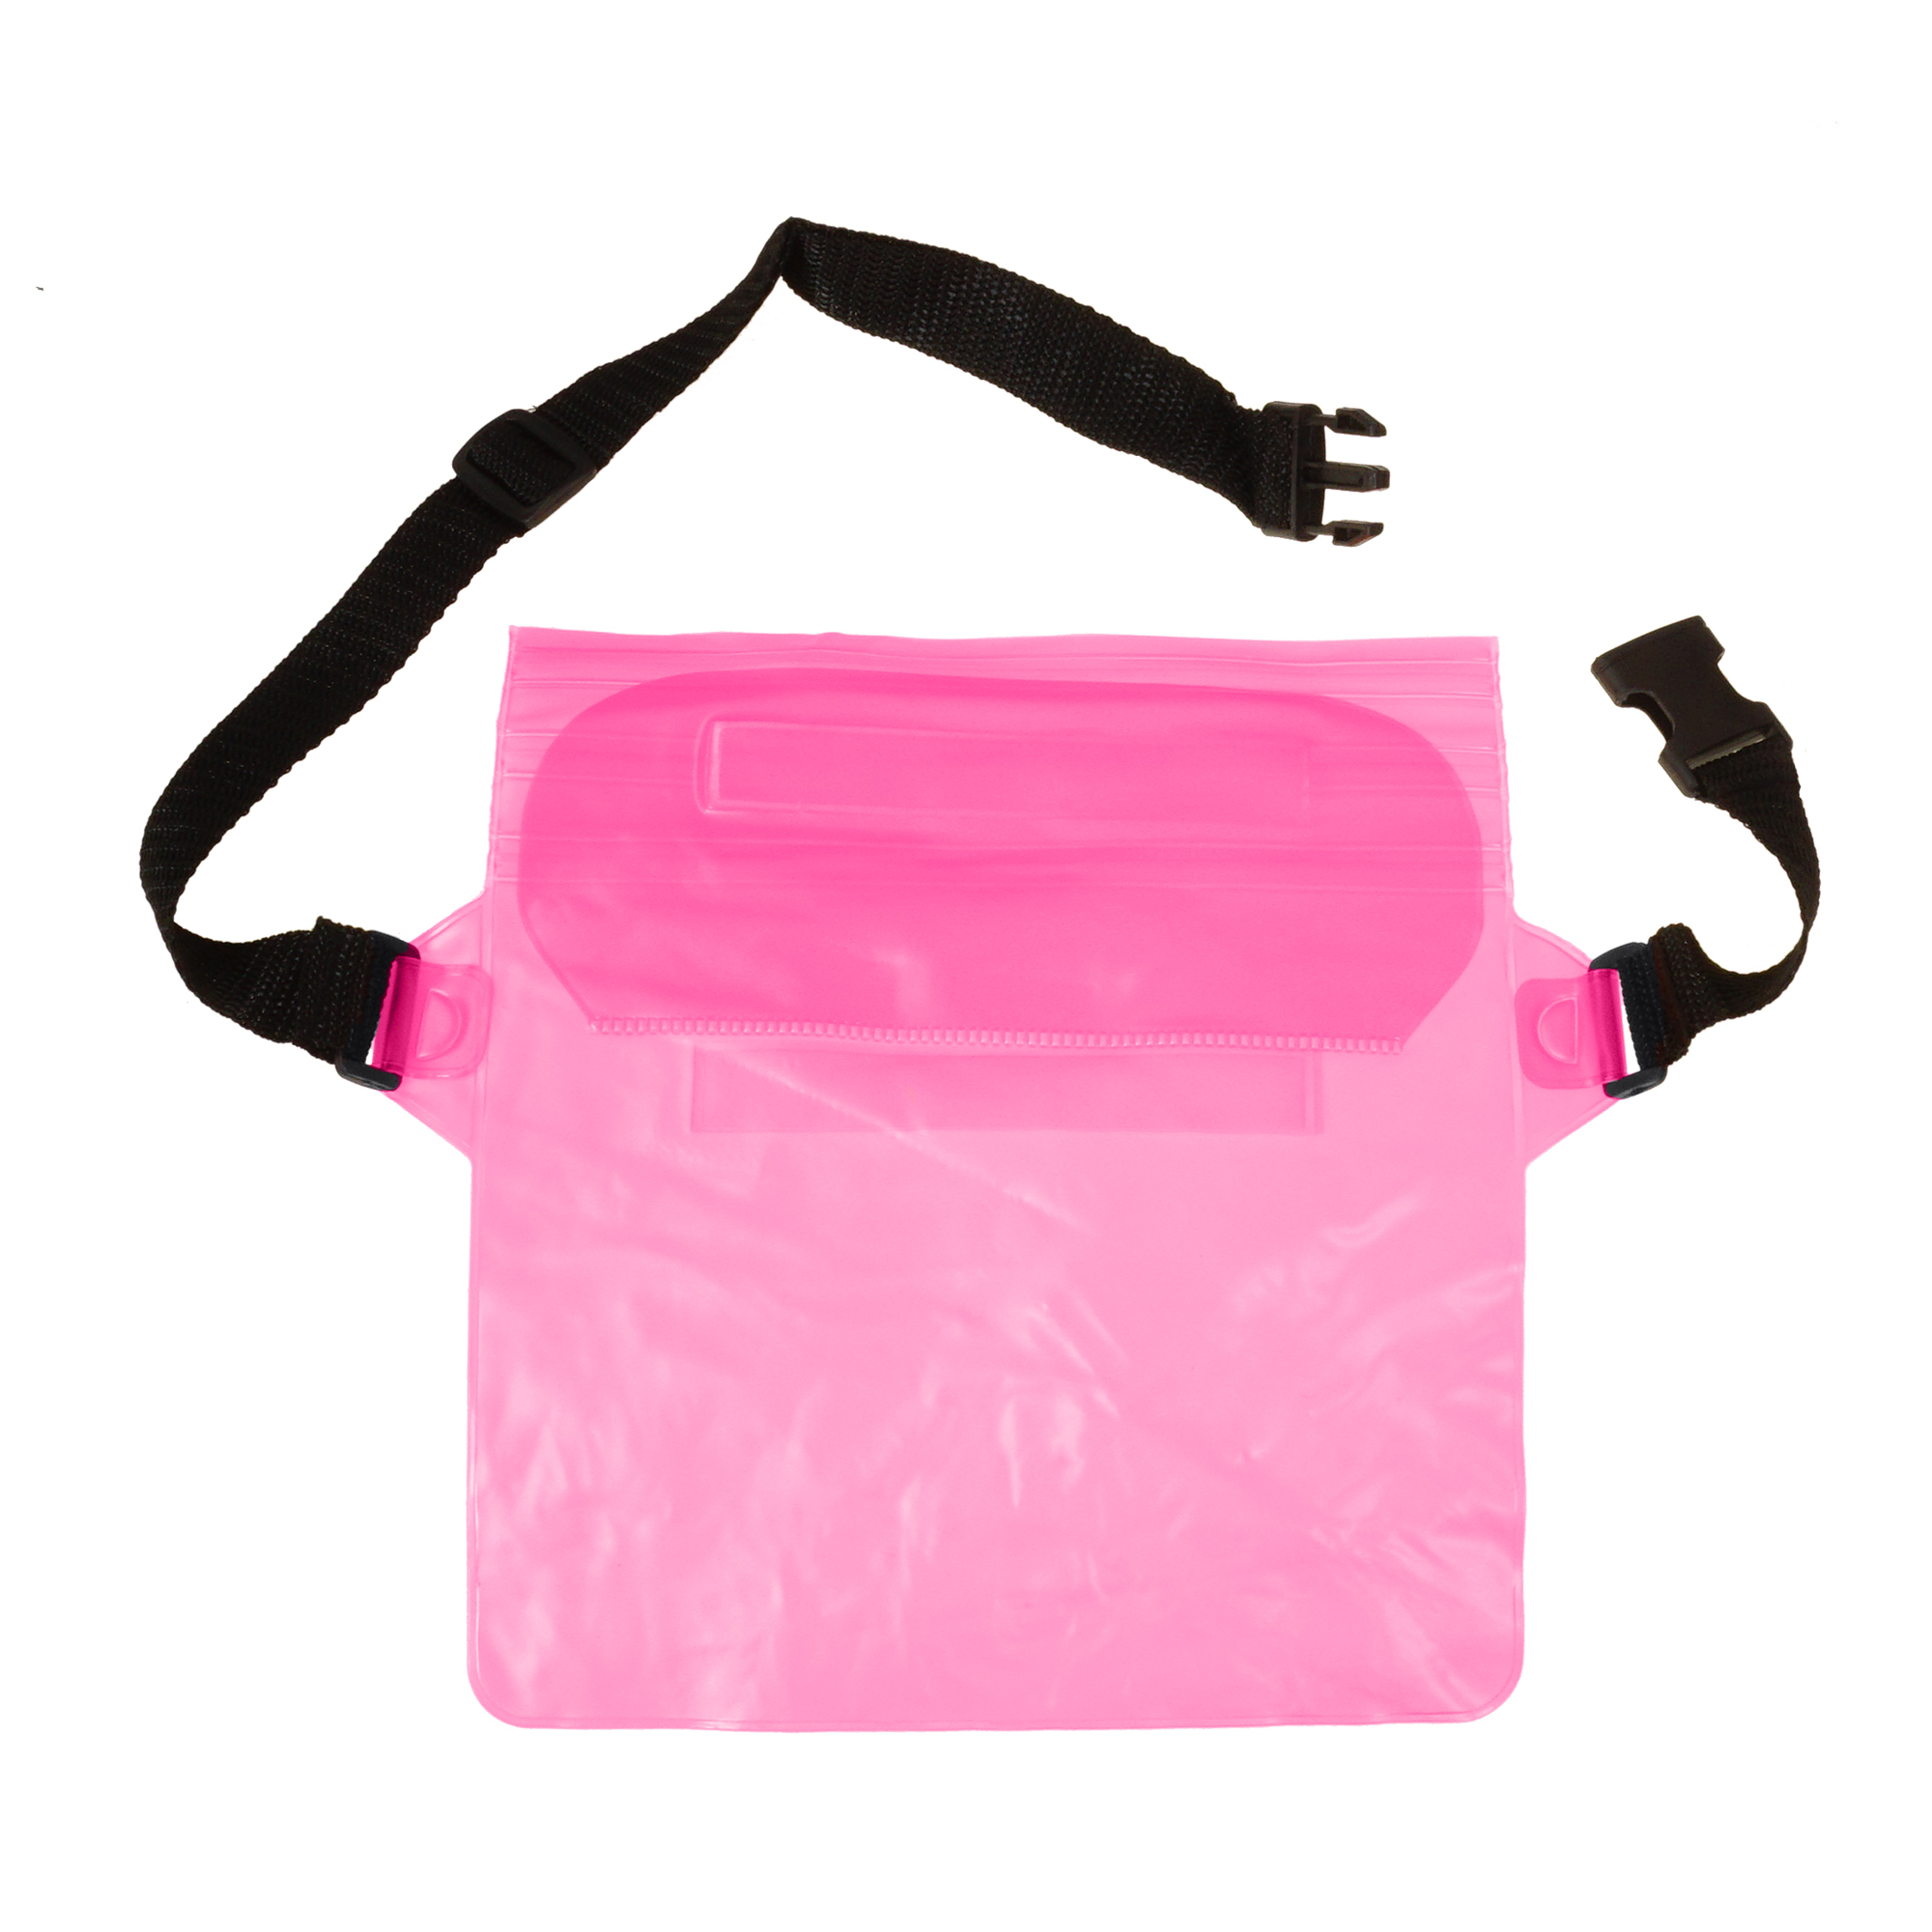 Акция на Поясна сумка чохол Supretto водонепроникна, рожева (71390006) от Wellamart - 3